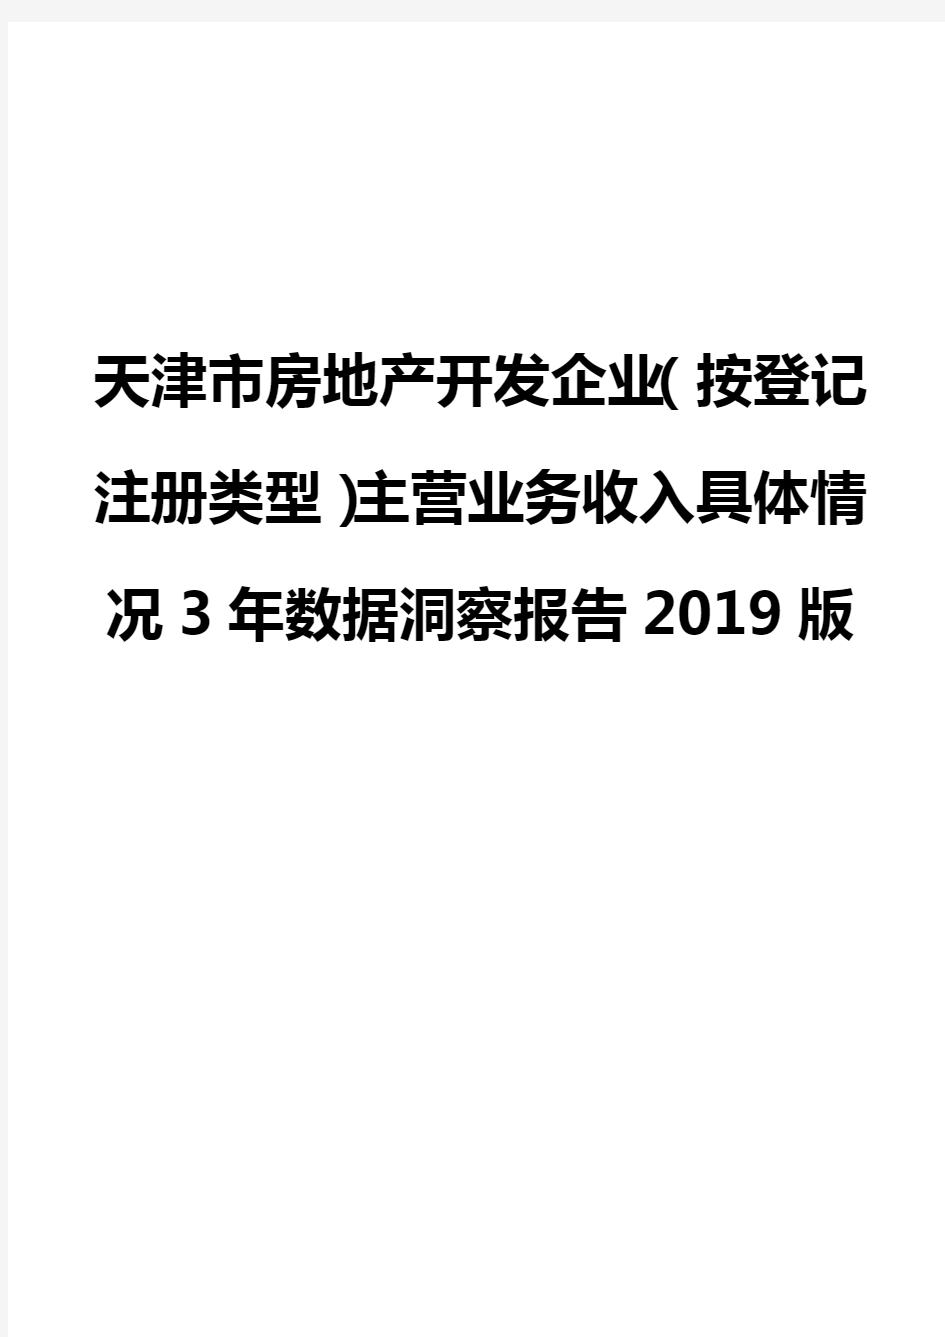 天津市房地产开发企业(按登记注册类型)主营业务收入具体情况3年数据洞察报告2019版